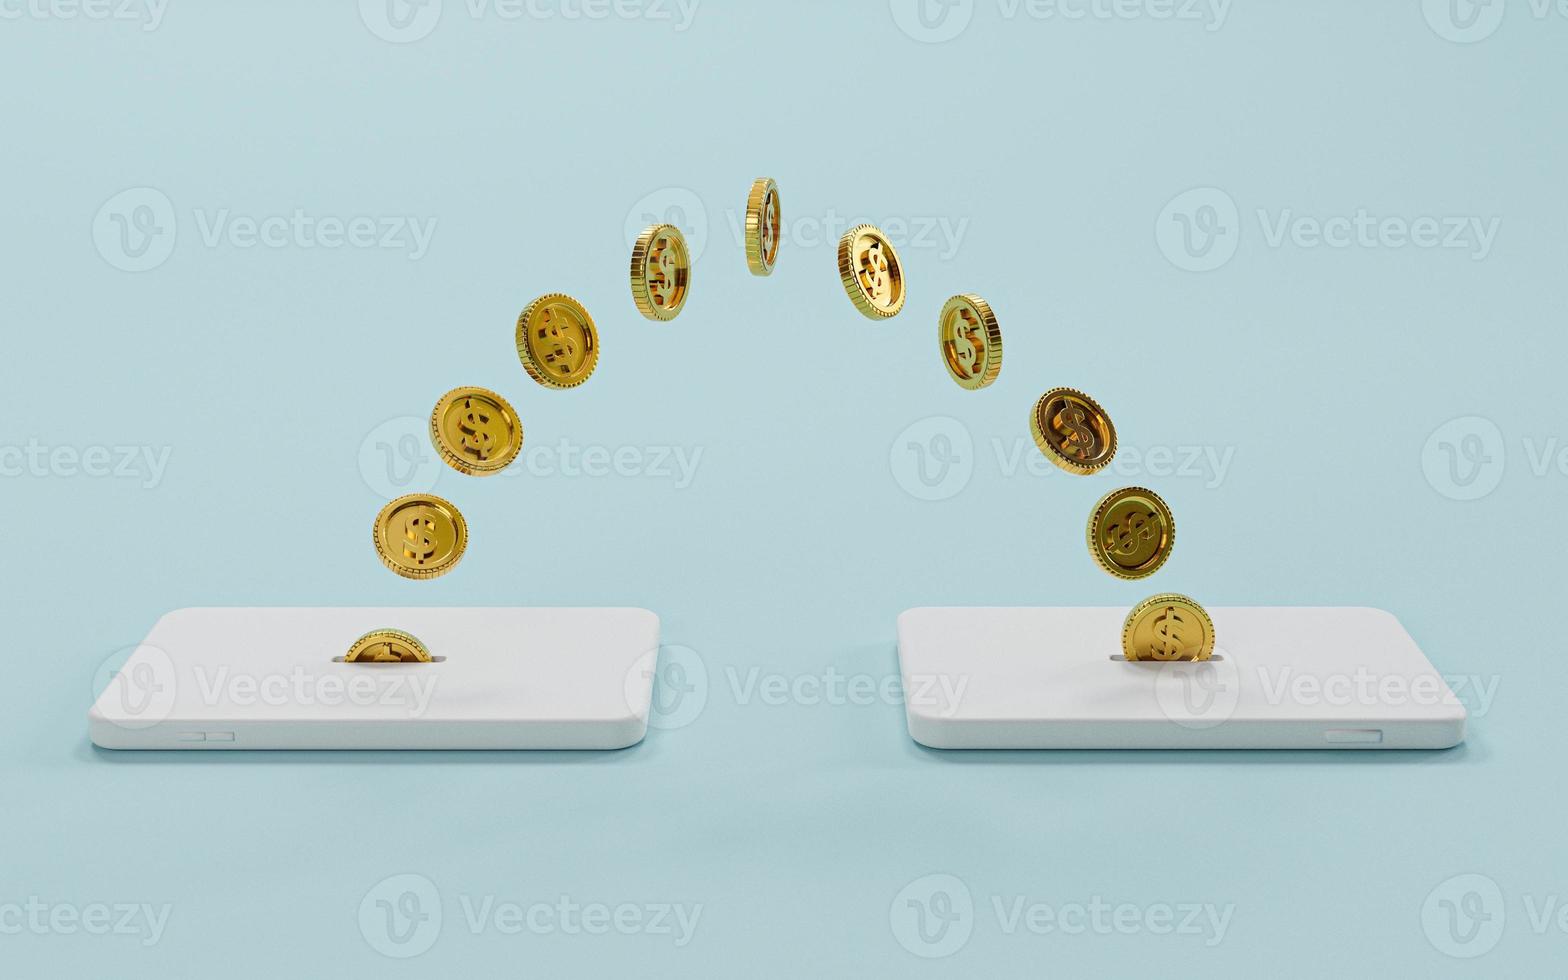 goldene münzen, die sich zwischen handy für geldtransfer und internet-mobilbanking oder elektronischem transaktionskonzept durch 3d-rendering bewegen. foto